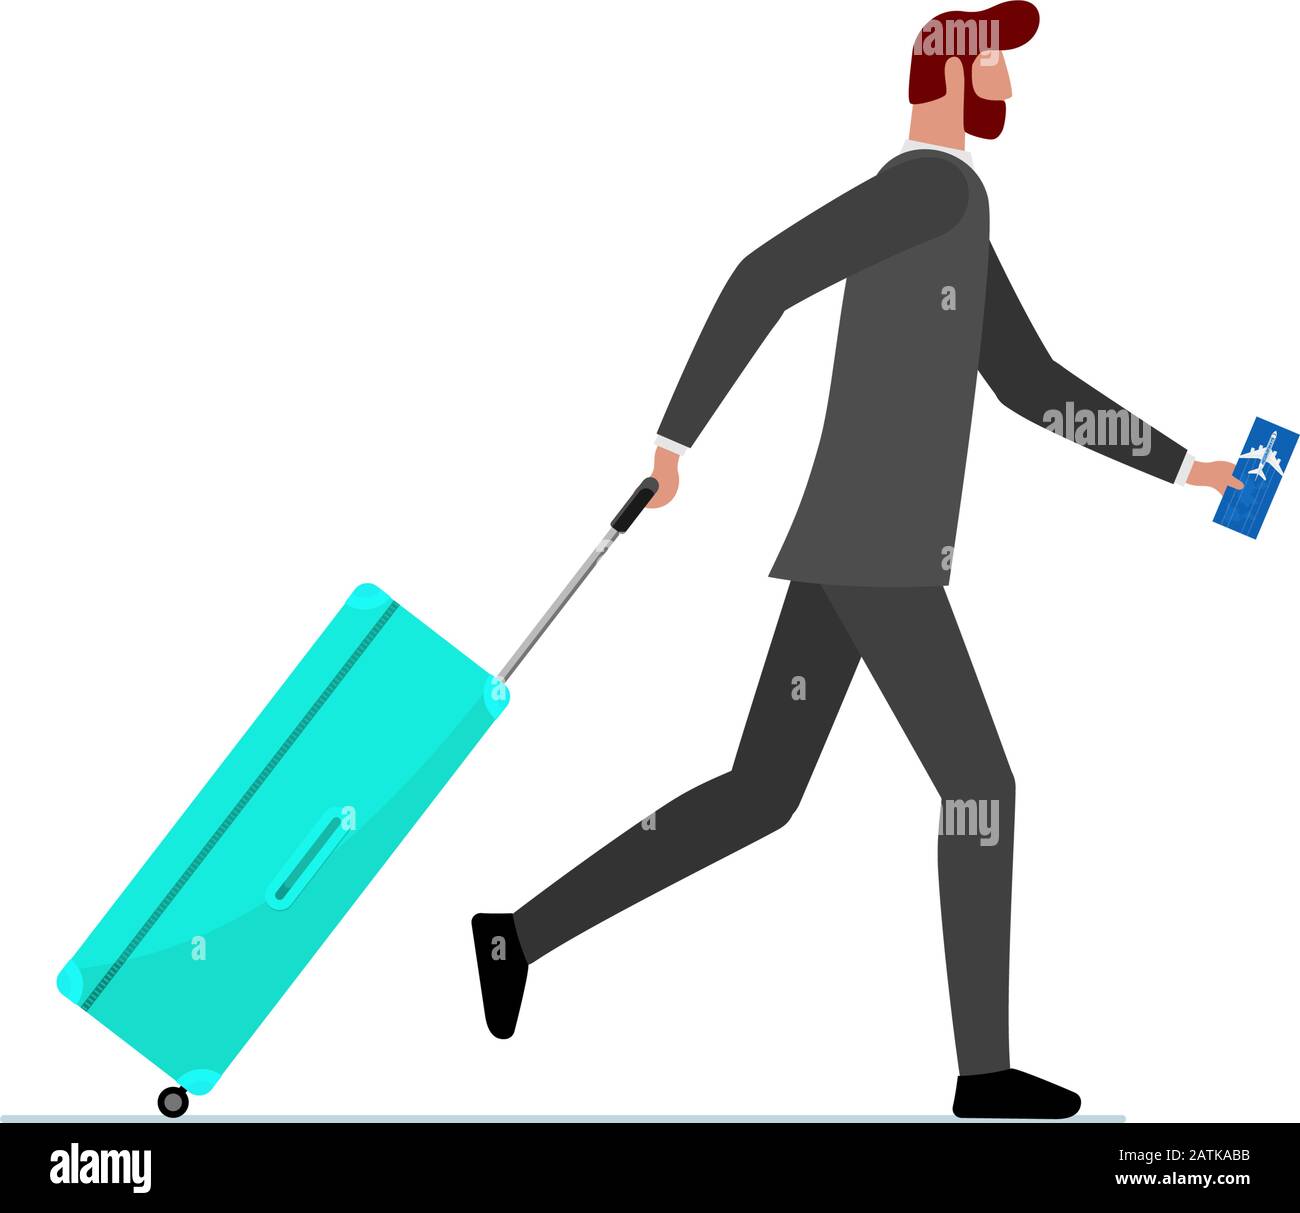 Uomo d'affari che corre con valigia e biglietto di volo. Hurying maschio con bagaglio borsetta che precipiti in aereo o volo mancante. Illustrazione vettoriale del concetto di viaggio tardivo dell'uomo turistico Illustrazione Vettoriale